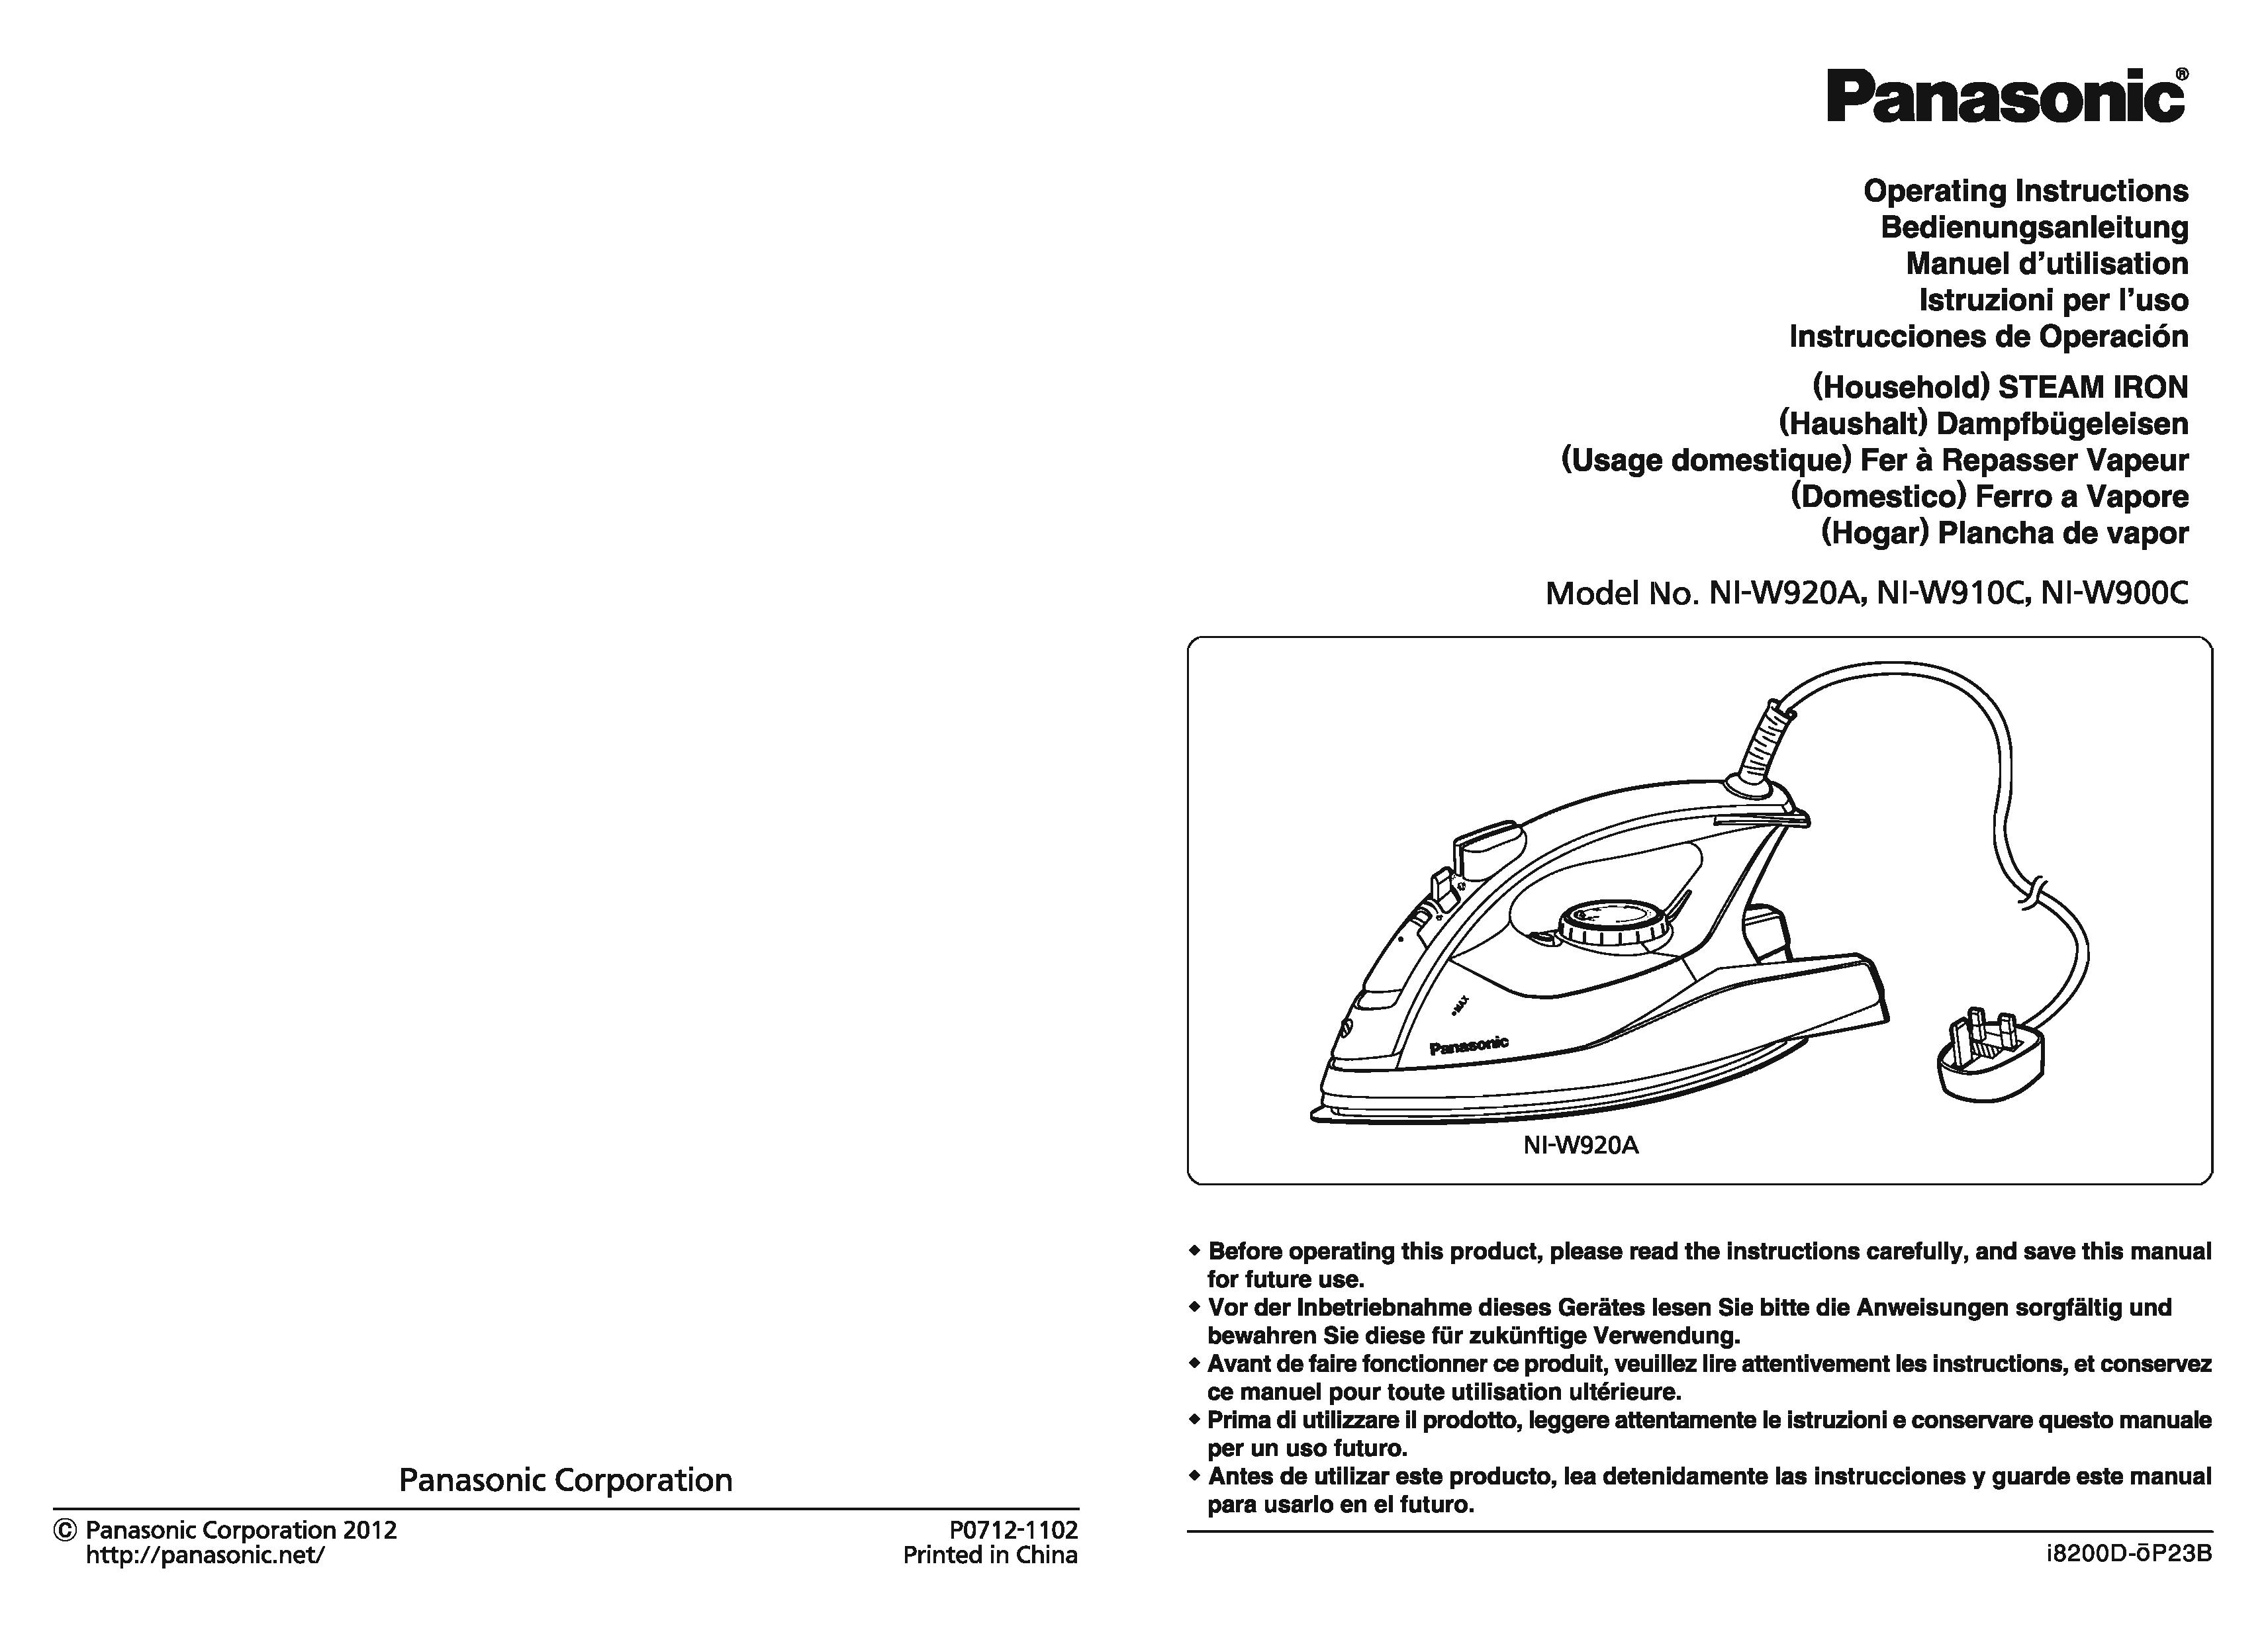 Panasonic NI-W920A Iron User Manual